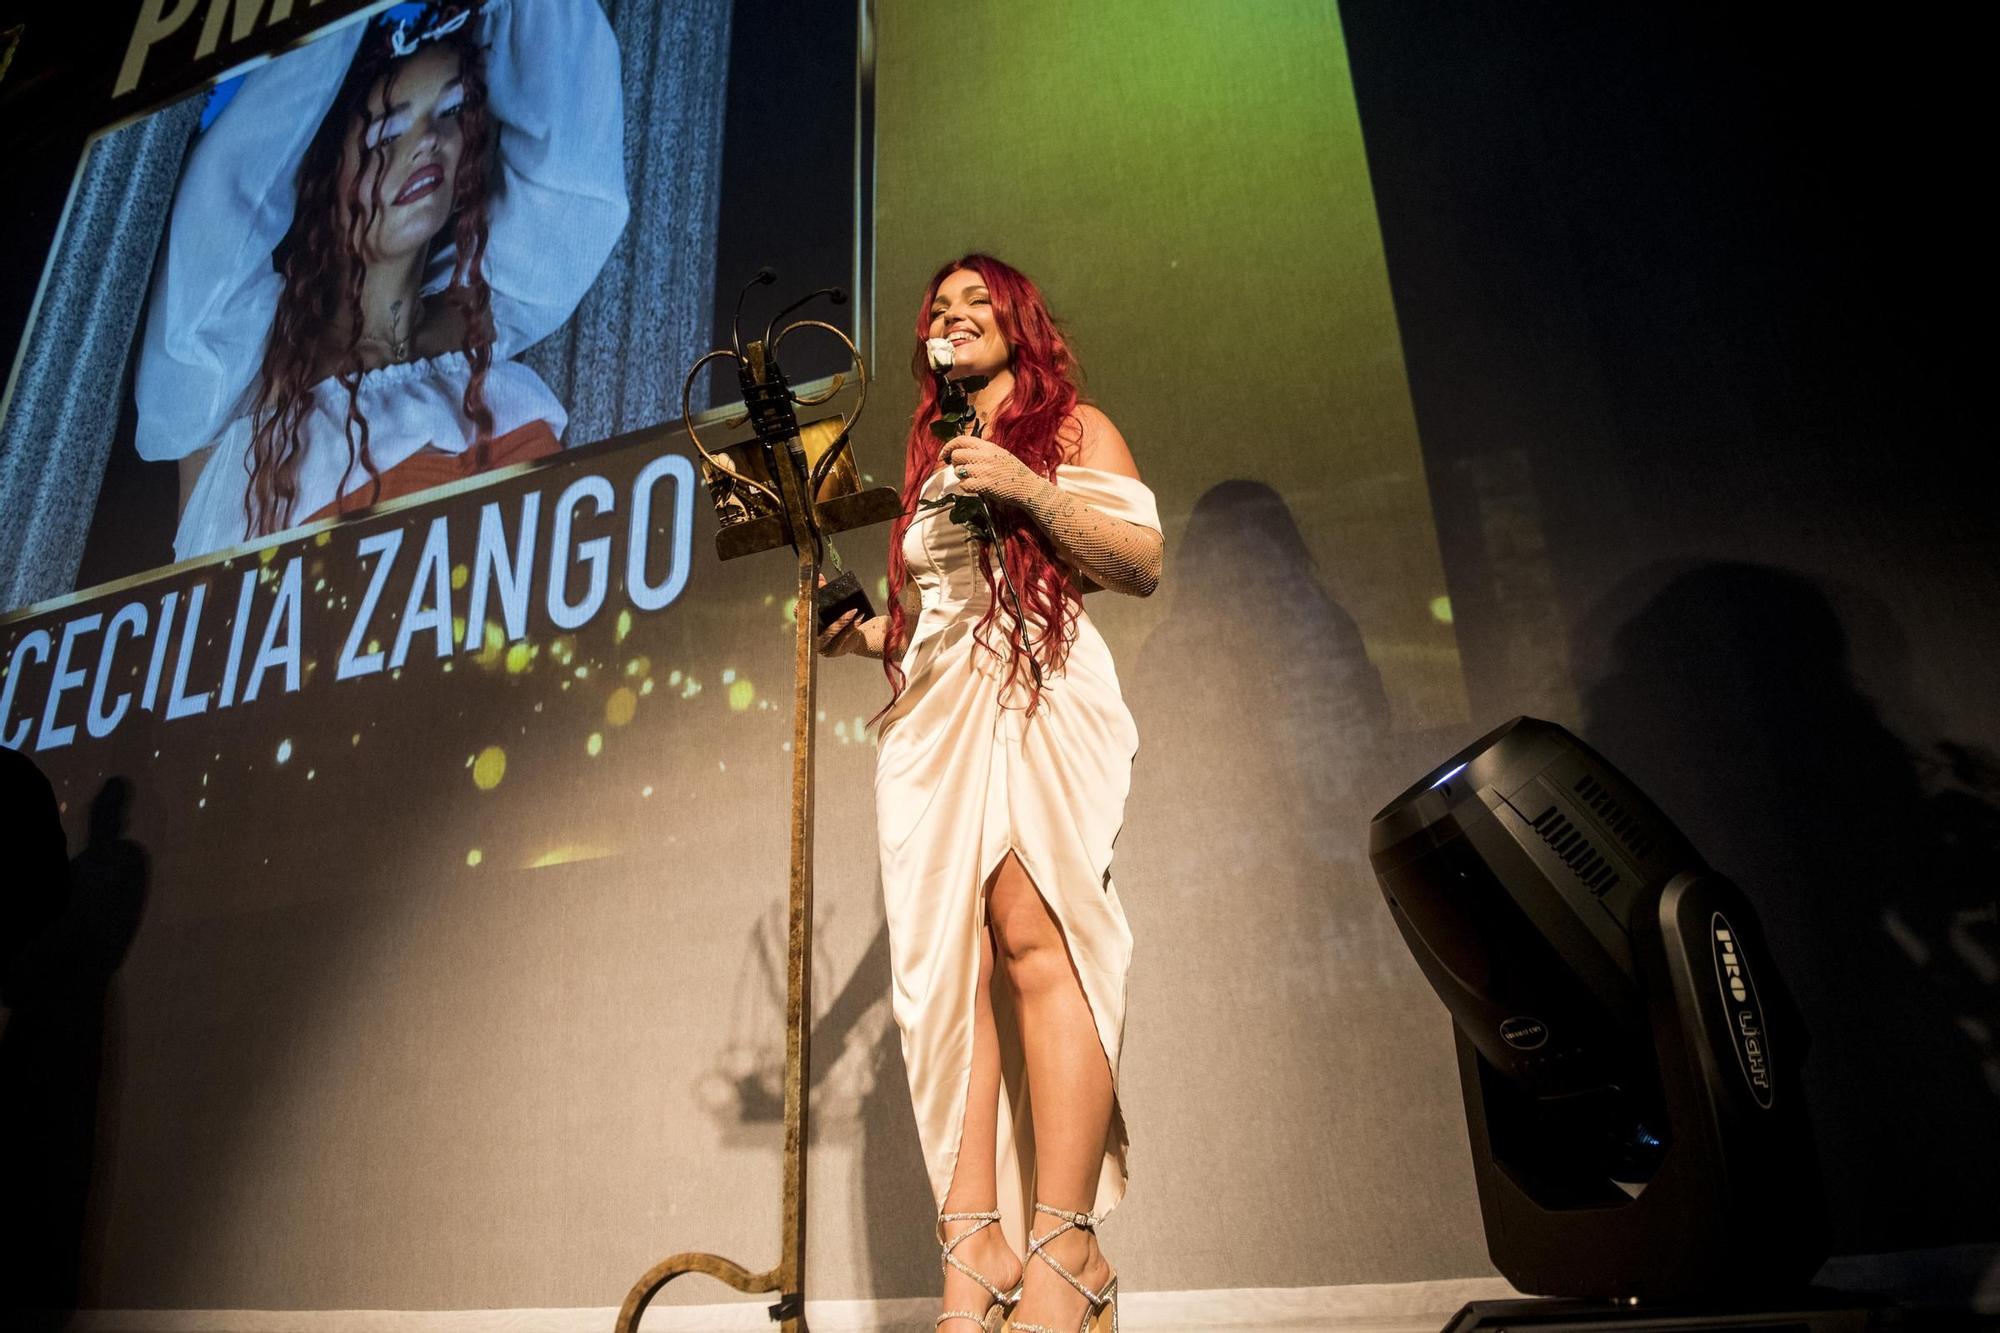 Galería | Robe triunfa en Cáceres en la fiesta de la música extremeña